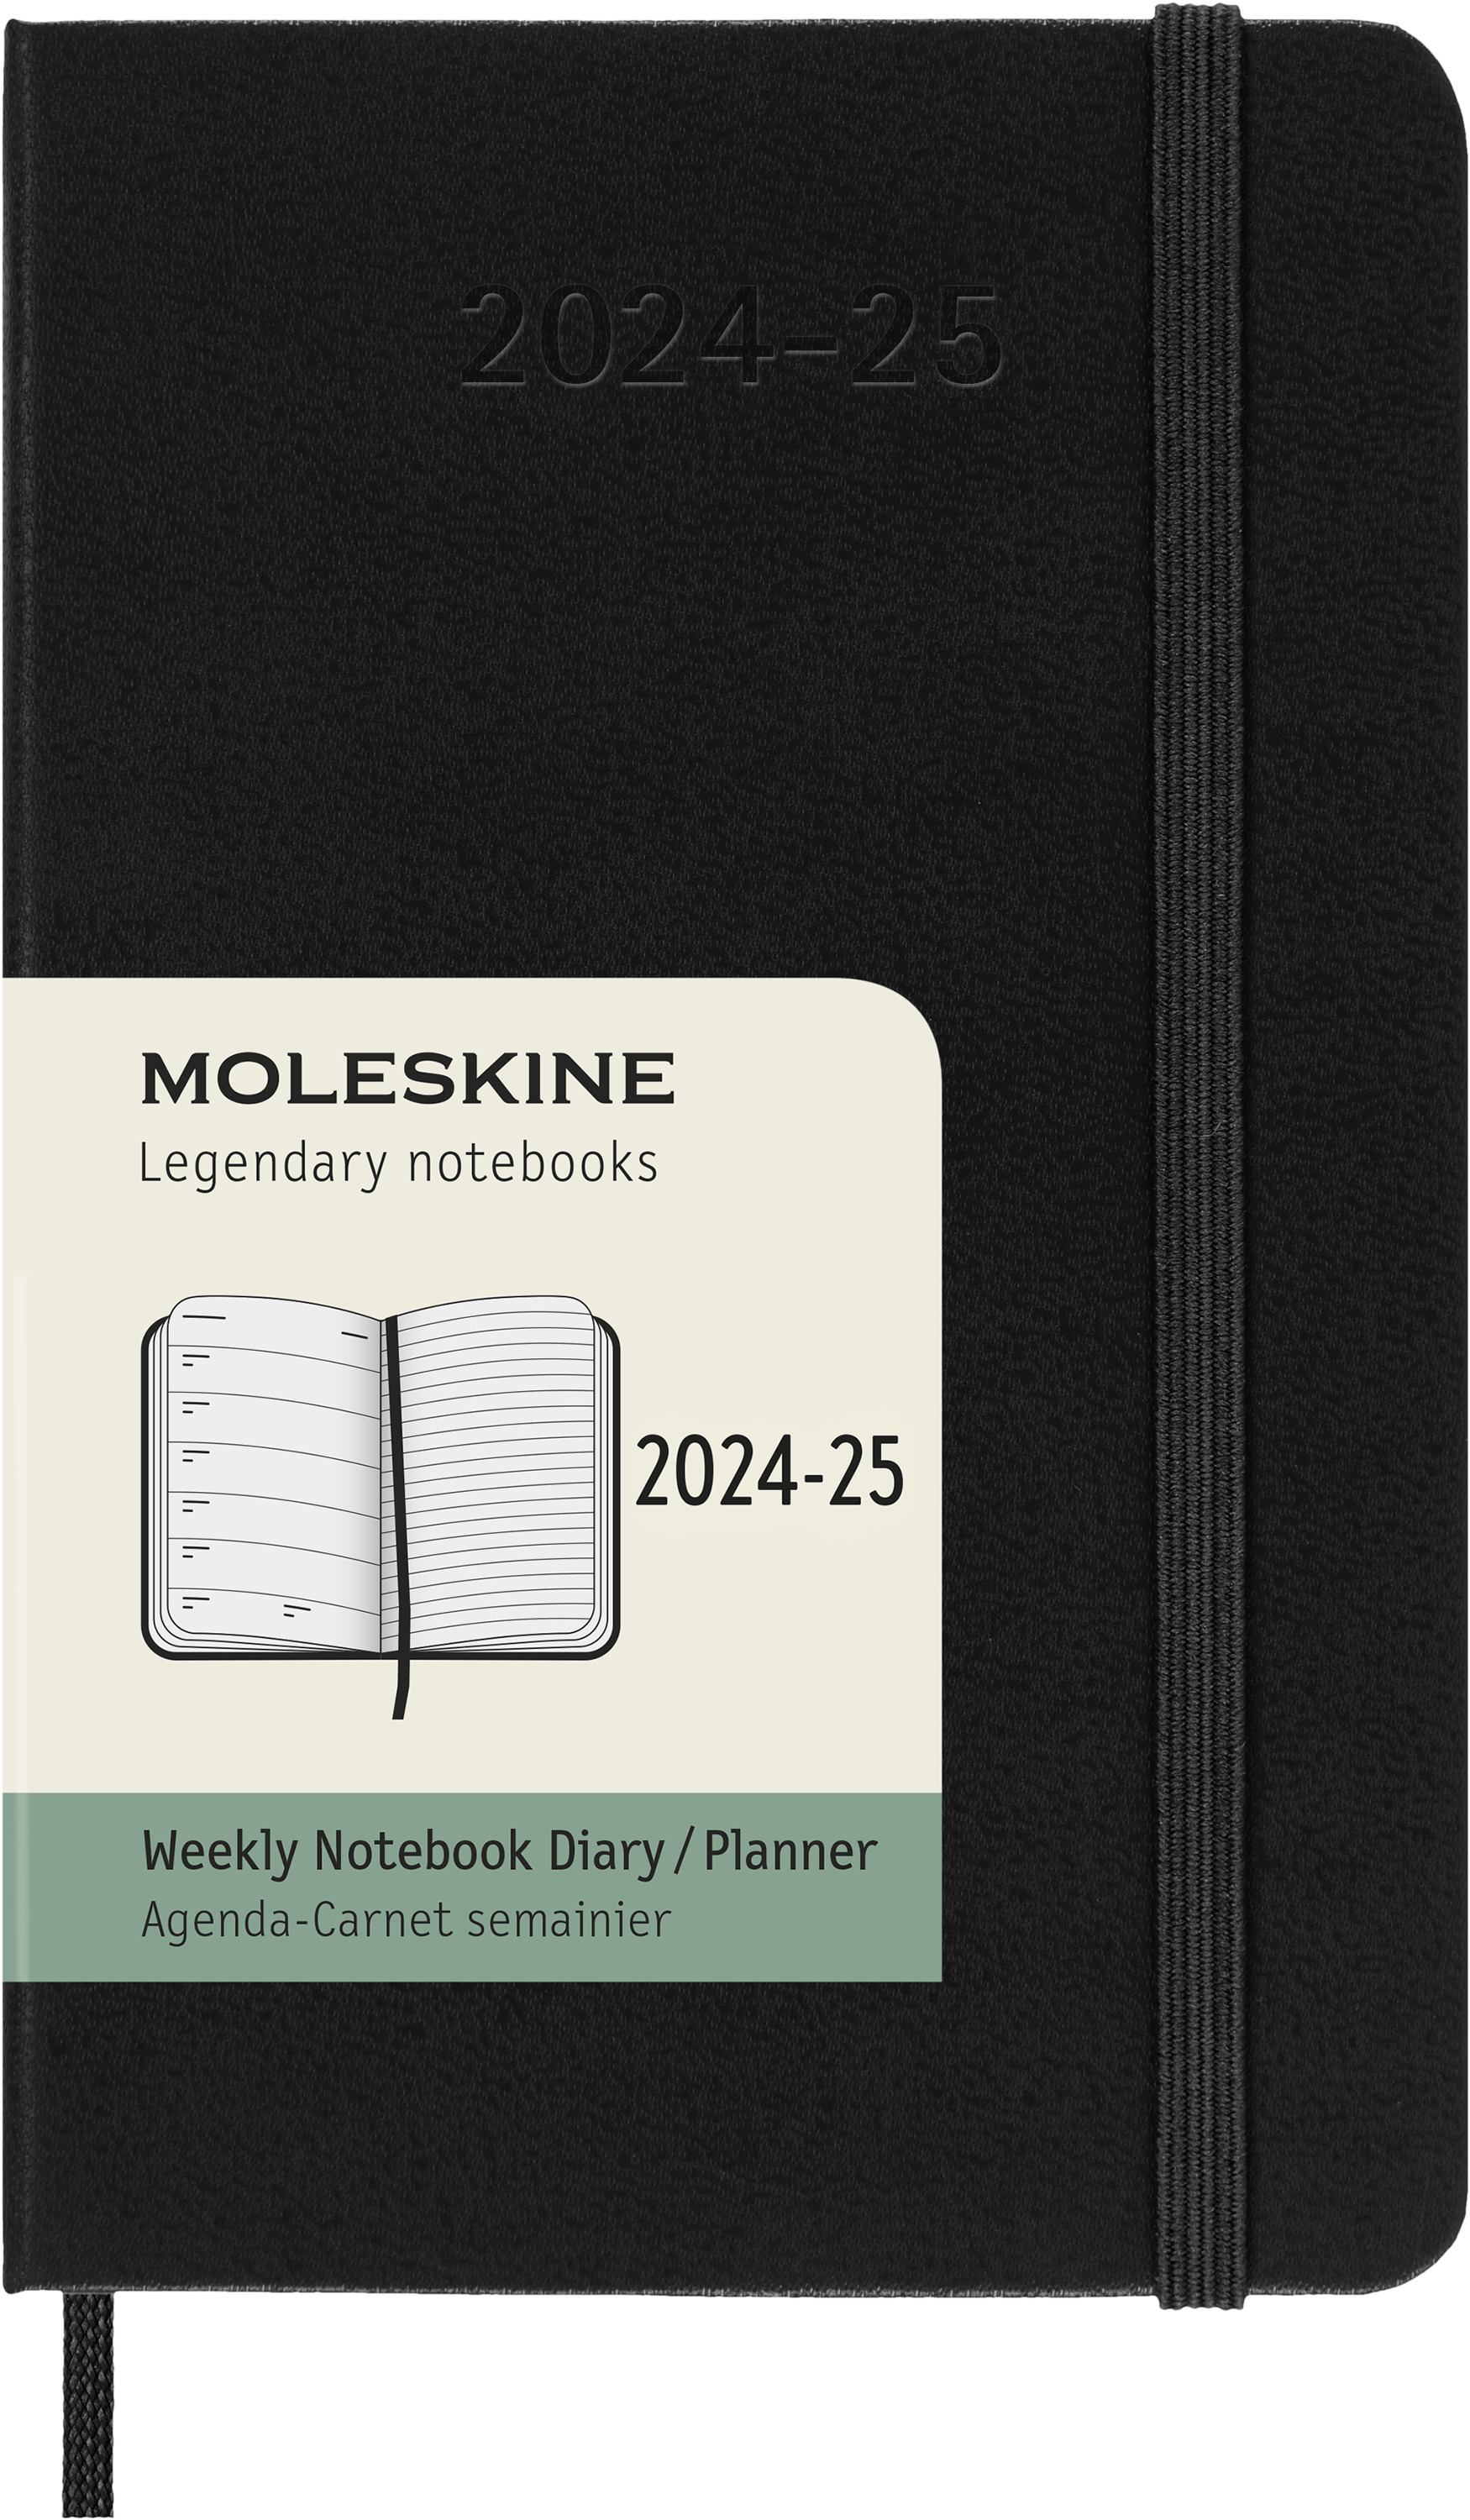 口袋尺寸隨寫隨攜帶➤2024-25  MOLESKINE週記手帳